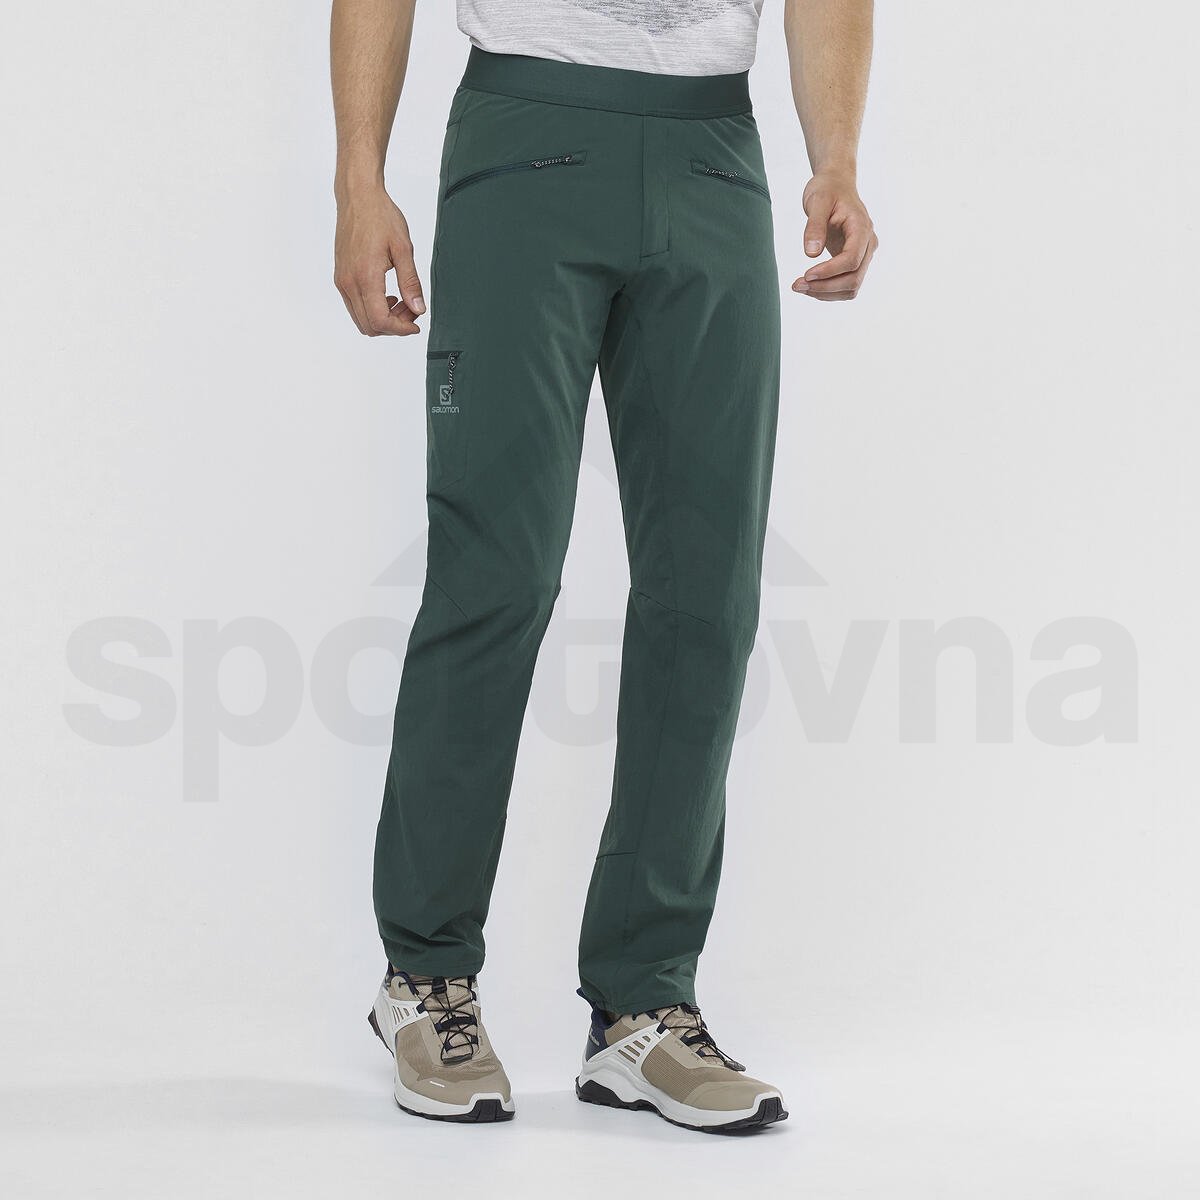 Kalhoty Salomon WAYFARER ALPINE PANT M - zelená